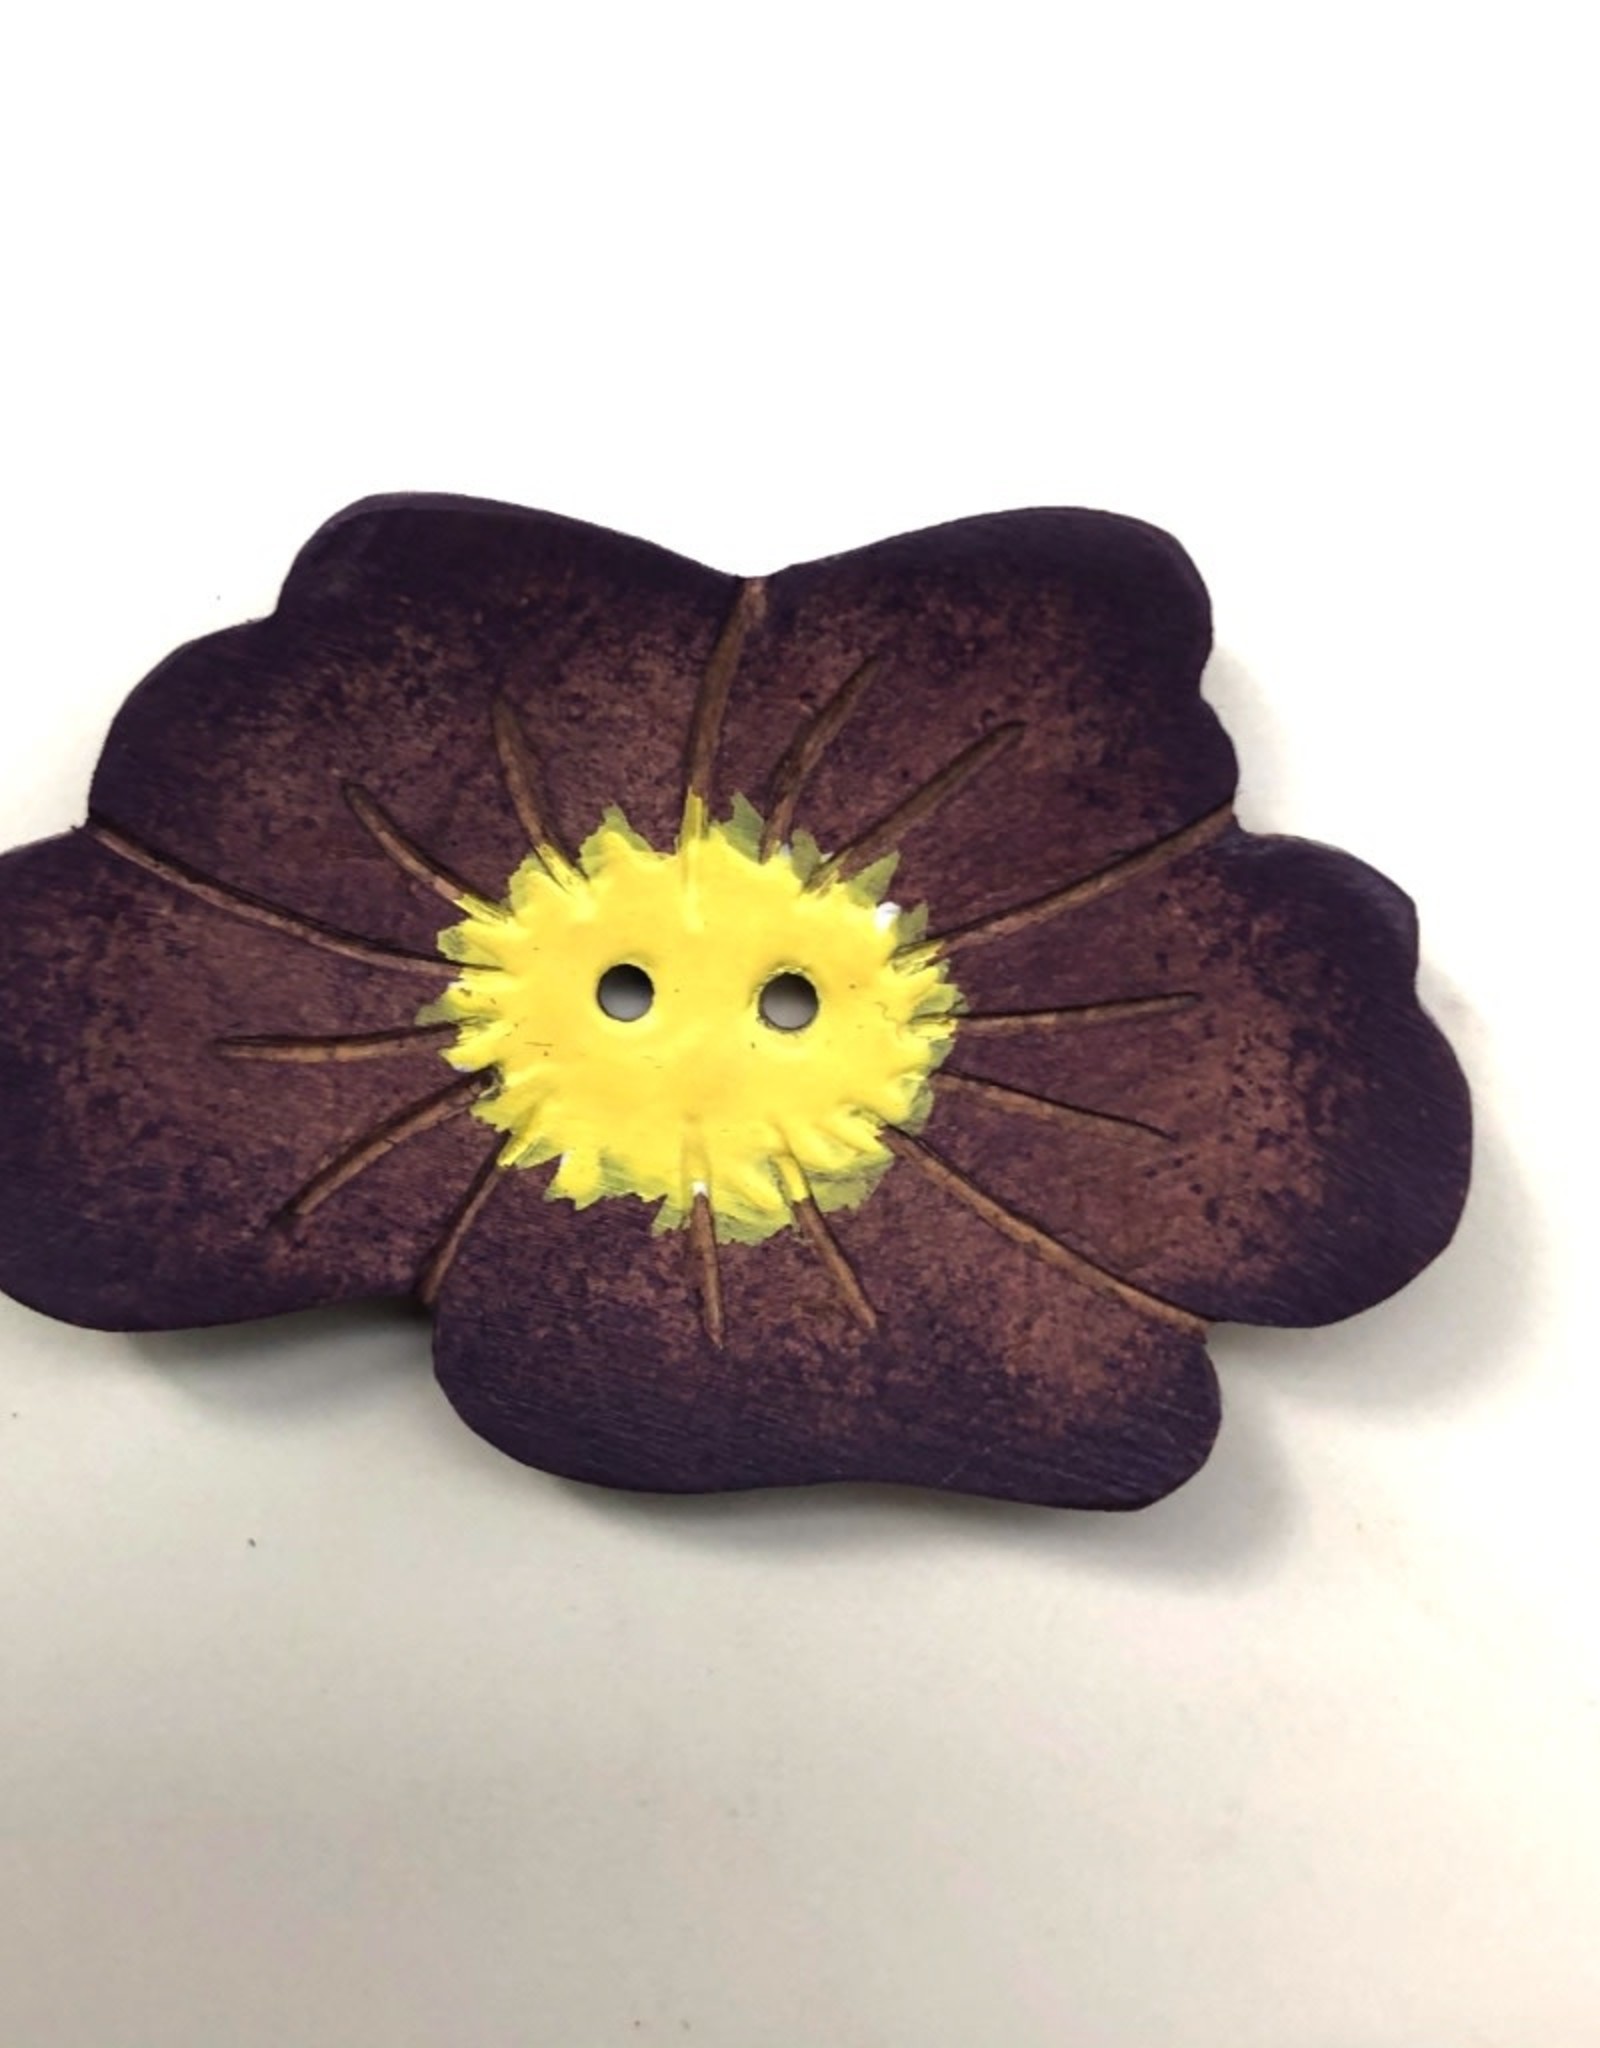 Purple Flower Button